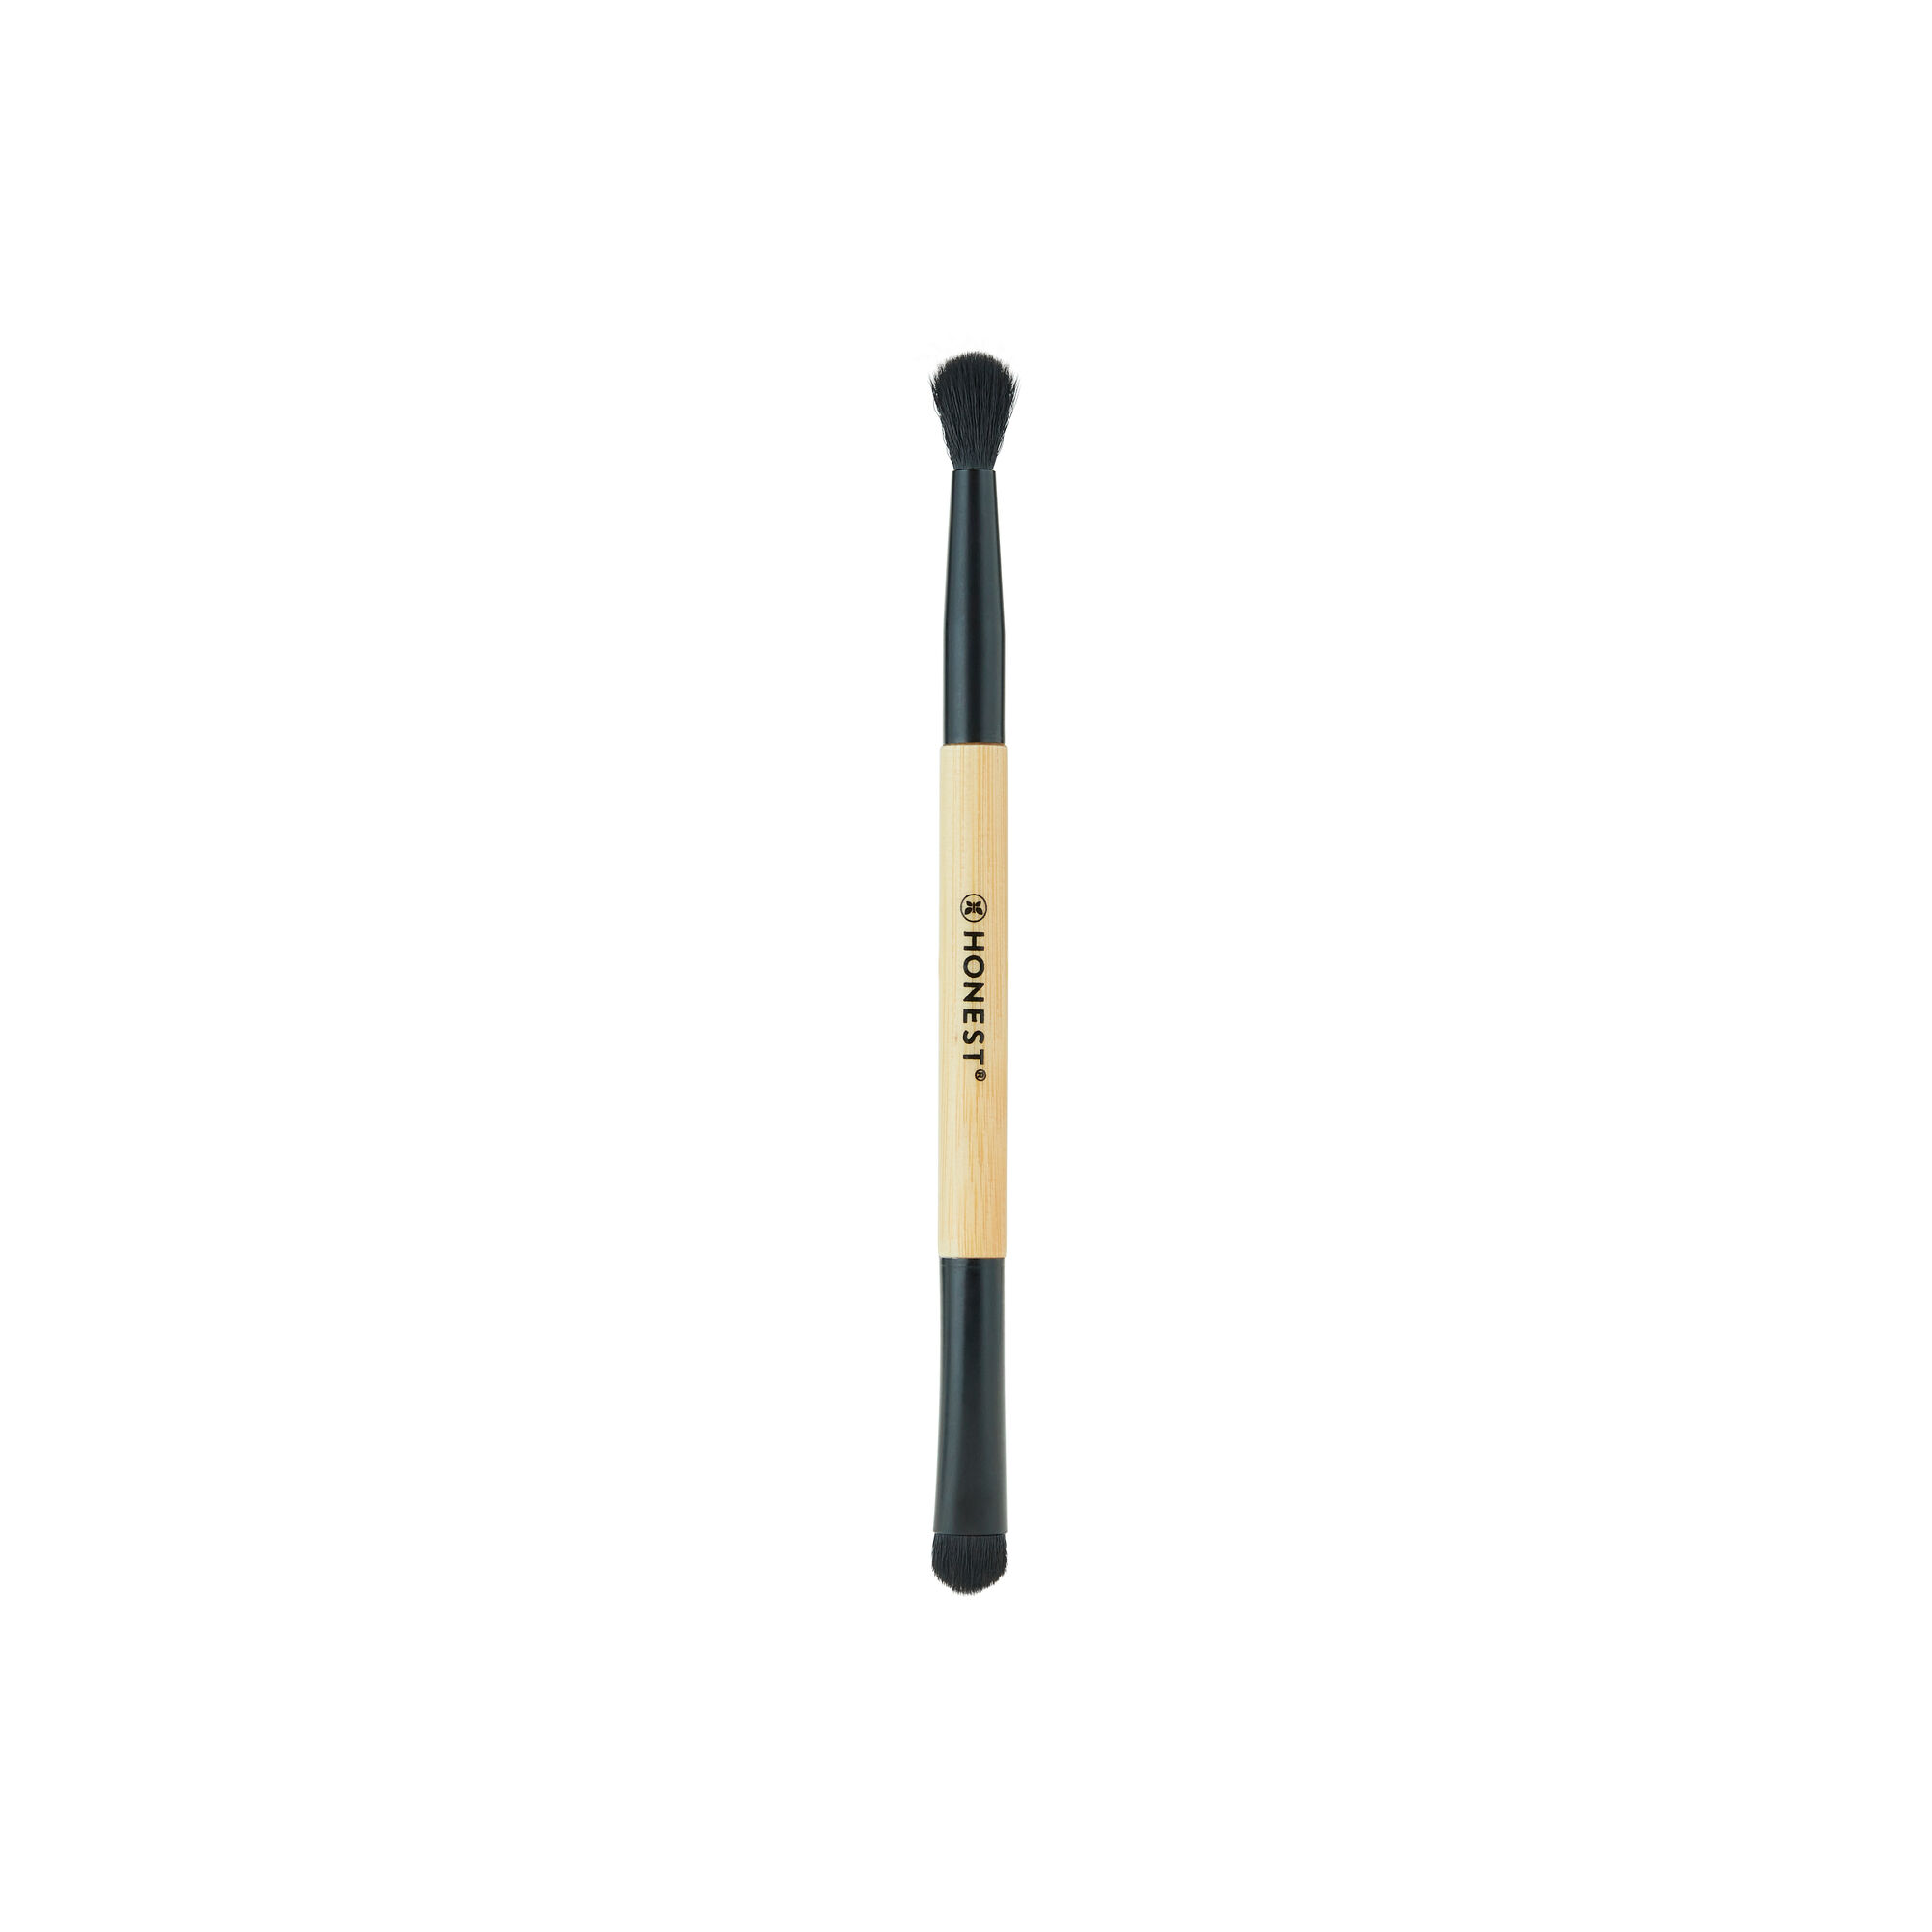 Bamboo Makeup Brush for Blending | Honest